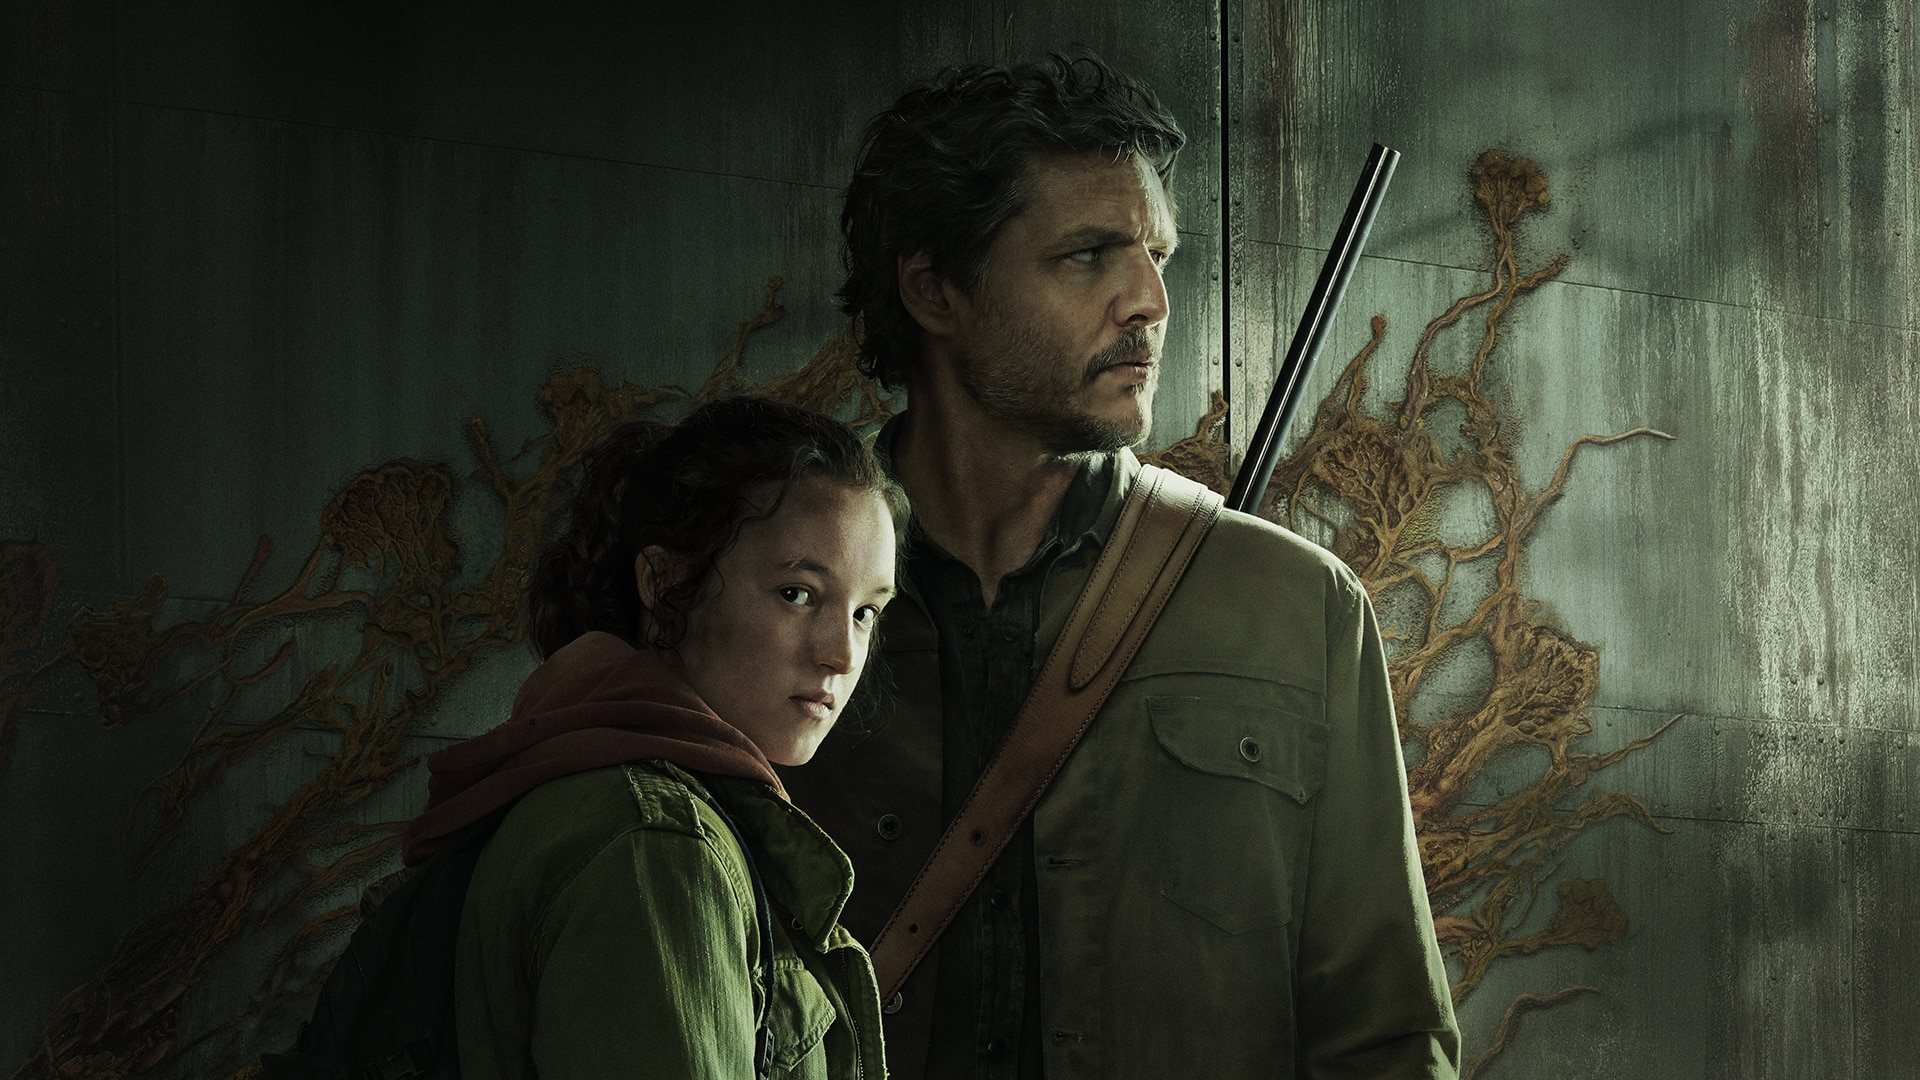 Infektionen sprider sig: The Last of Us-skaparen säger att säsong 2 är "redo att lanseras" och full av överraskningar 